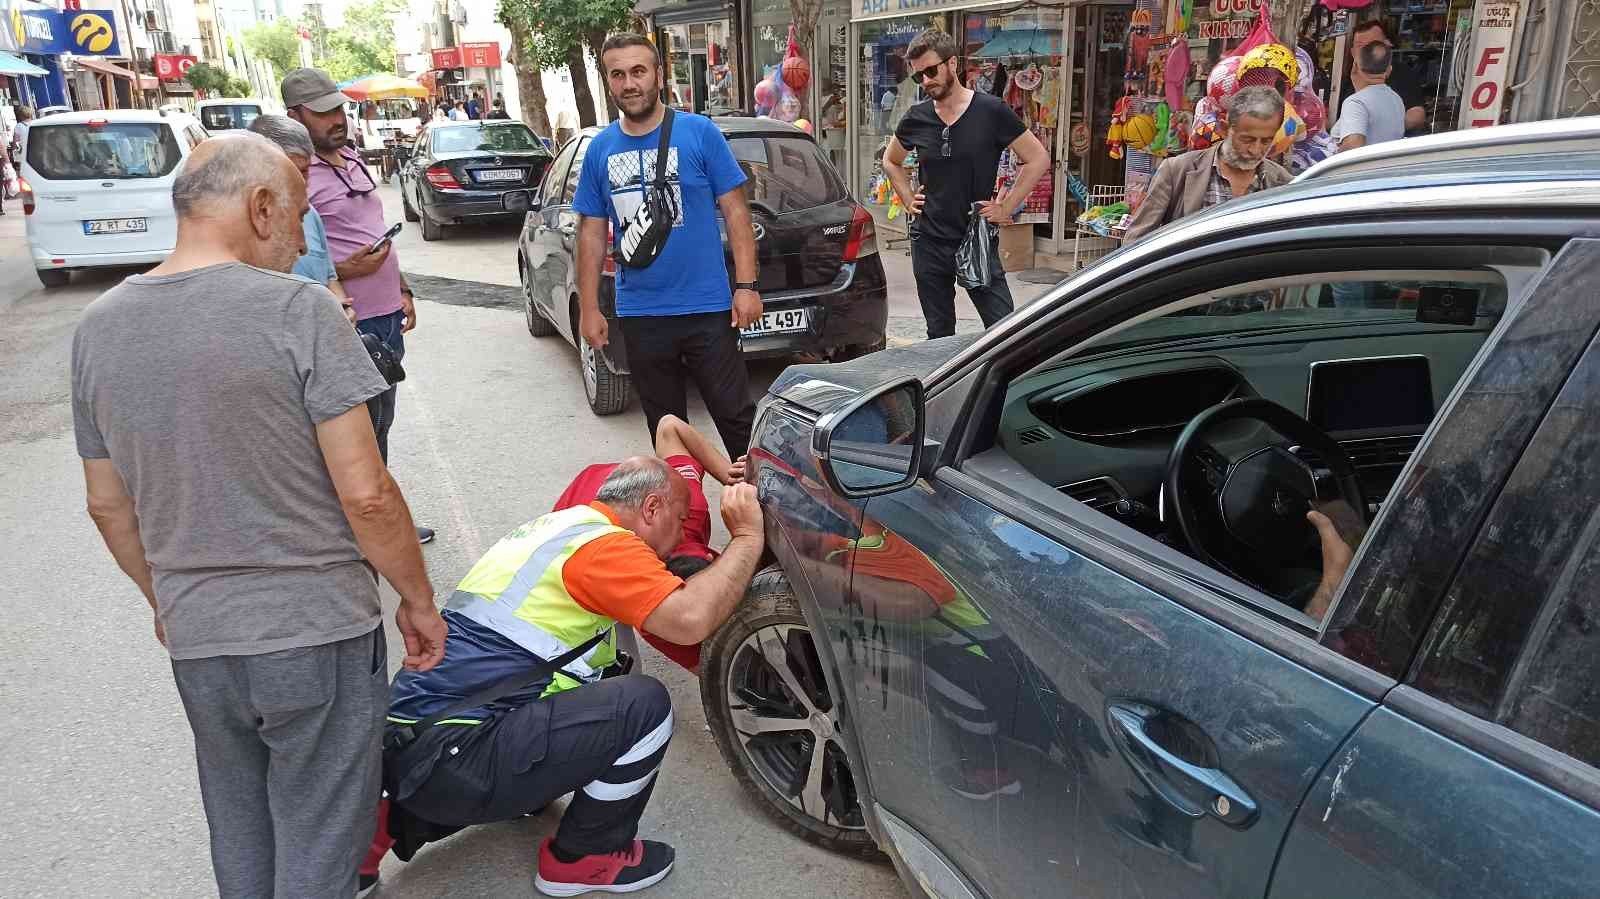 Edirne’nin Keşan ilçesinde park halinde bulunan bir aracın motor kısmına sıkışan yavru kediyi kurtarmak için vatandaşlar seferber oldu. Dışarı ...